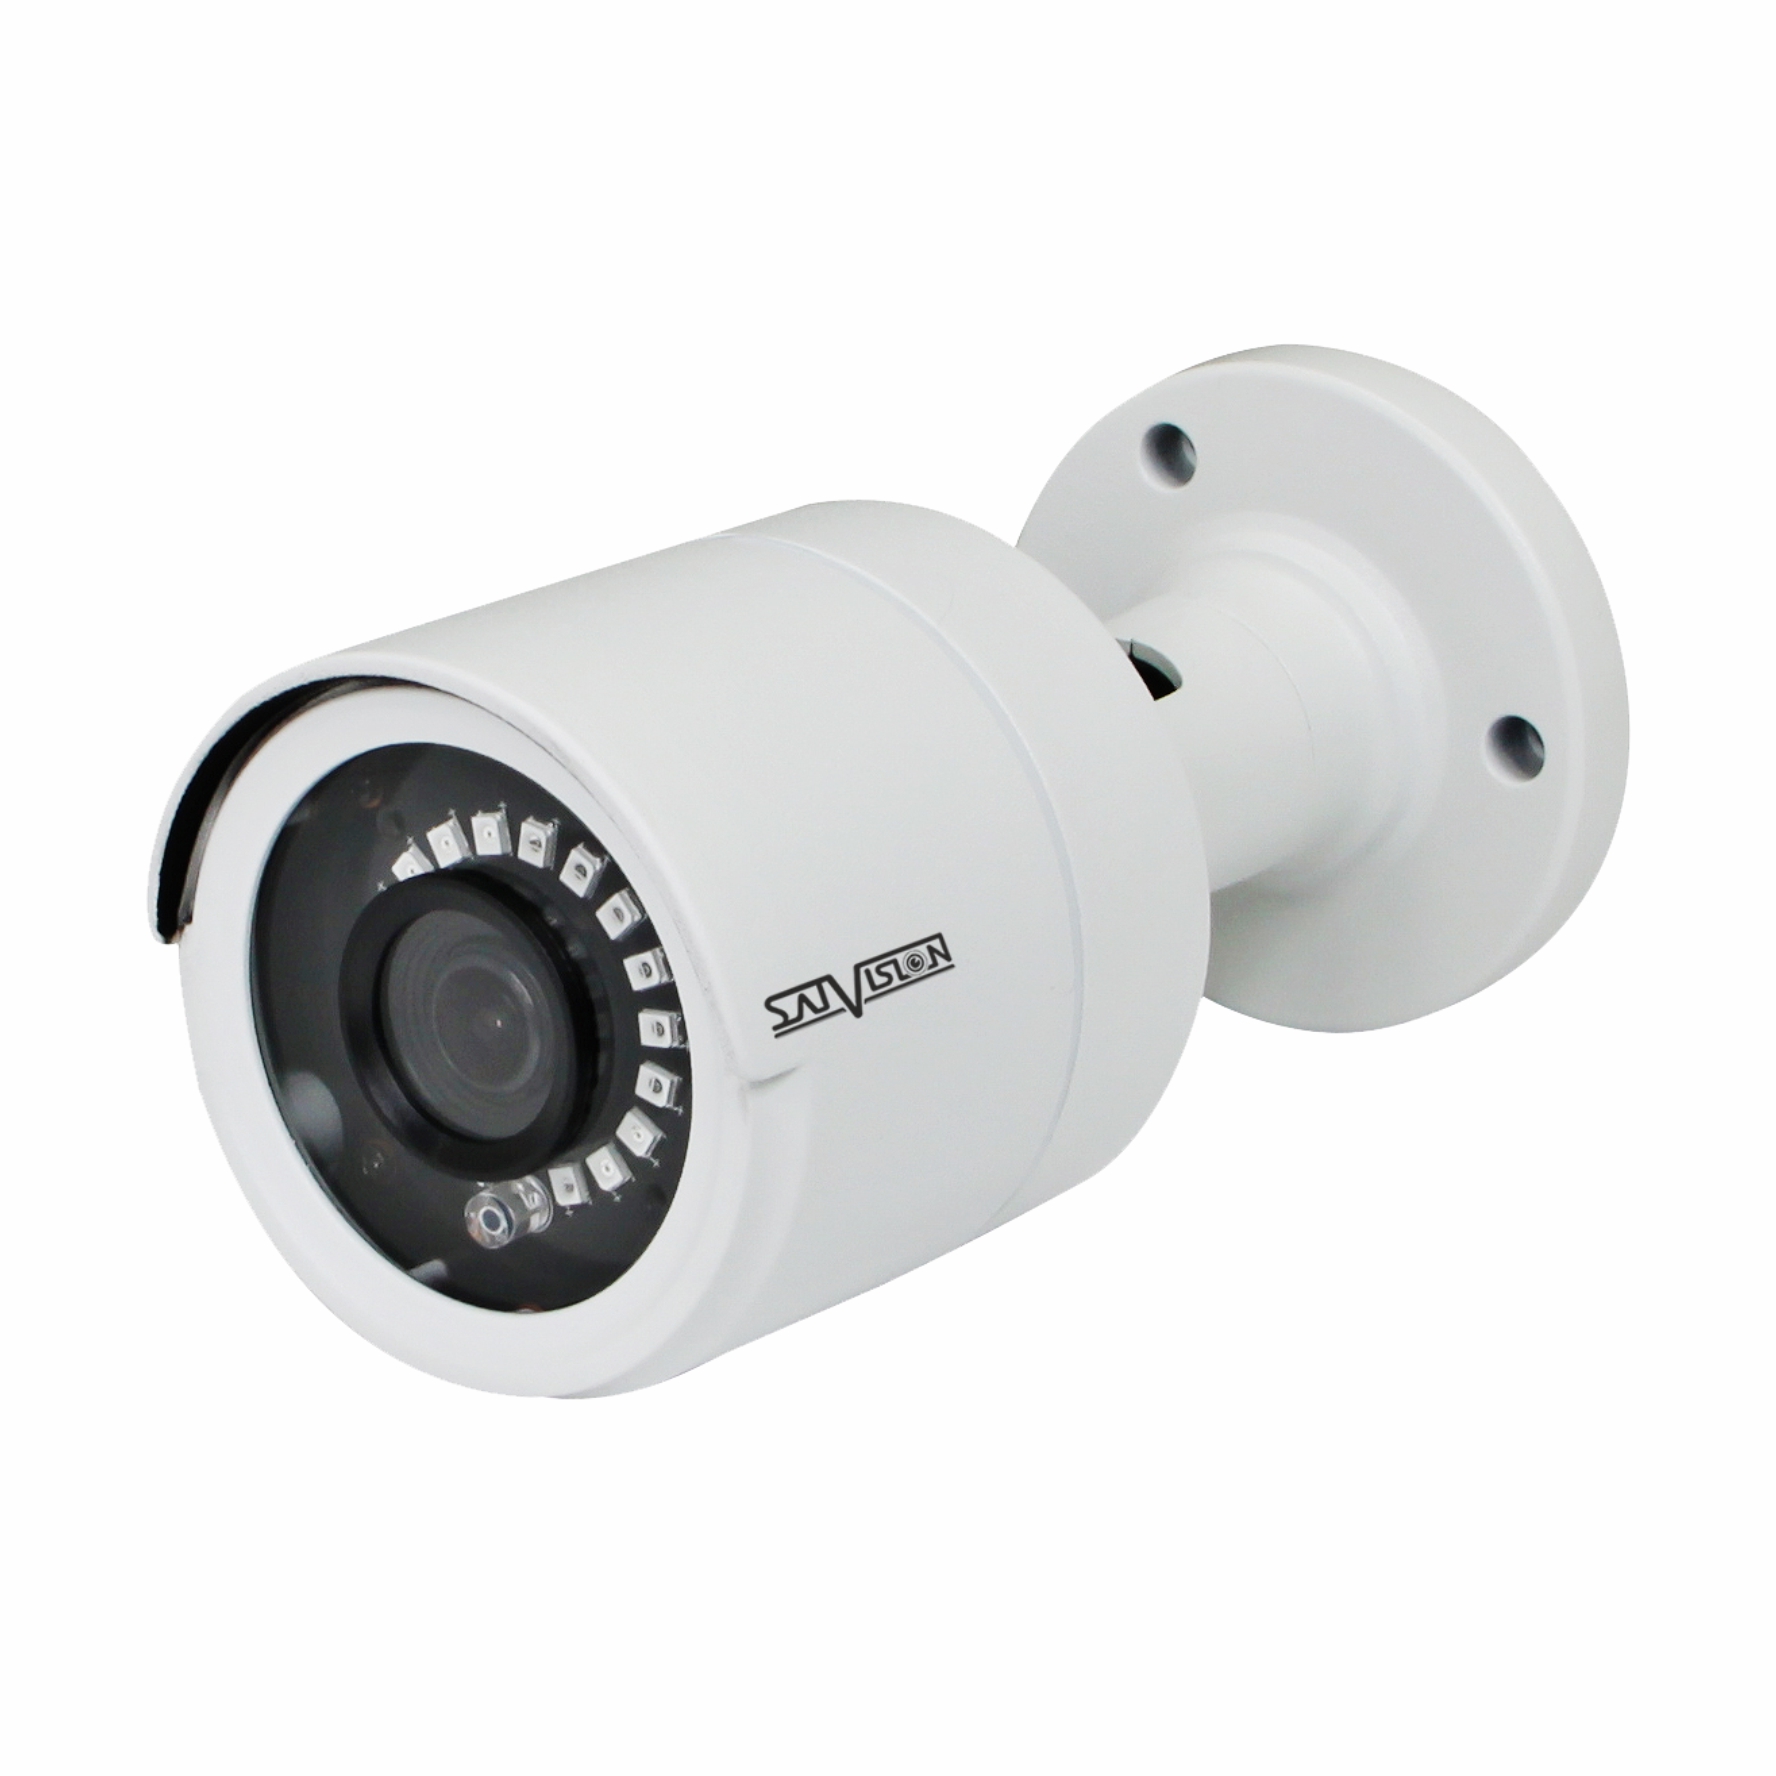 Видеокамеры 3 мп. IP-видеокамера уличная svi-s123. Satvision svi-s123 SD видеокамера IP. IP-видеокамера Satvision svi-s123 (2mpix, 2.8мм). Svi-s123 SD SL V2.0 2mpix 2.8mm видеокамера IP.